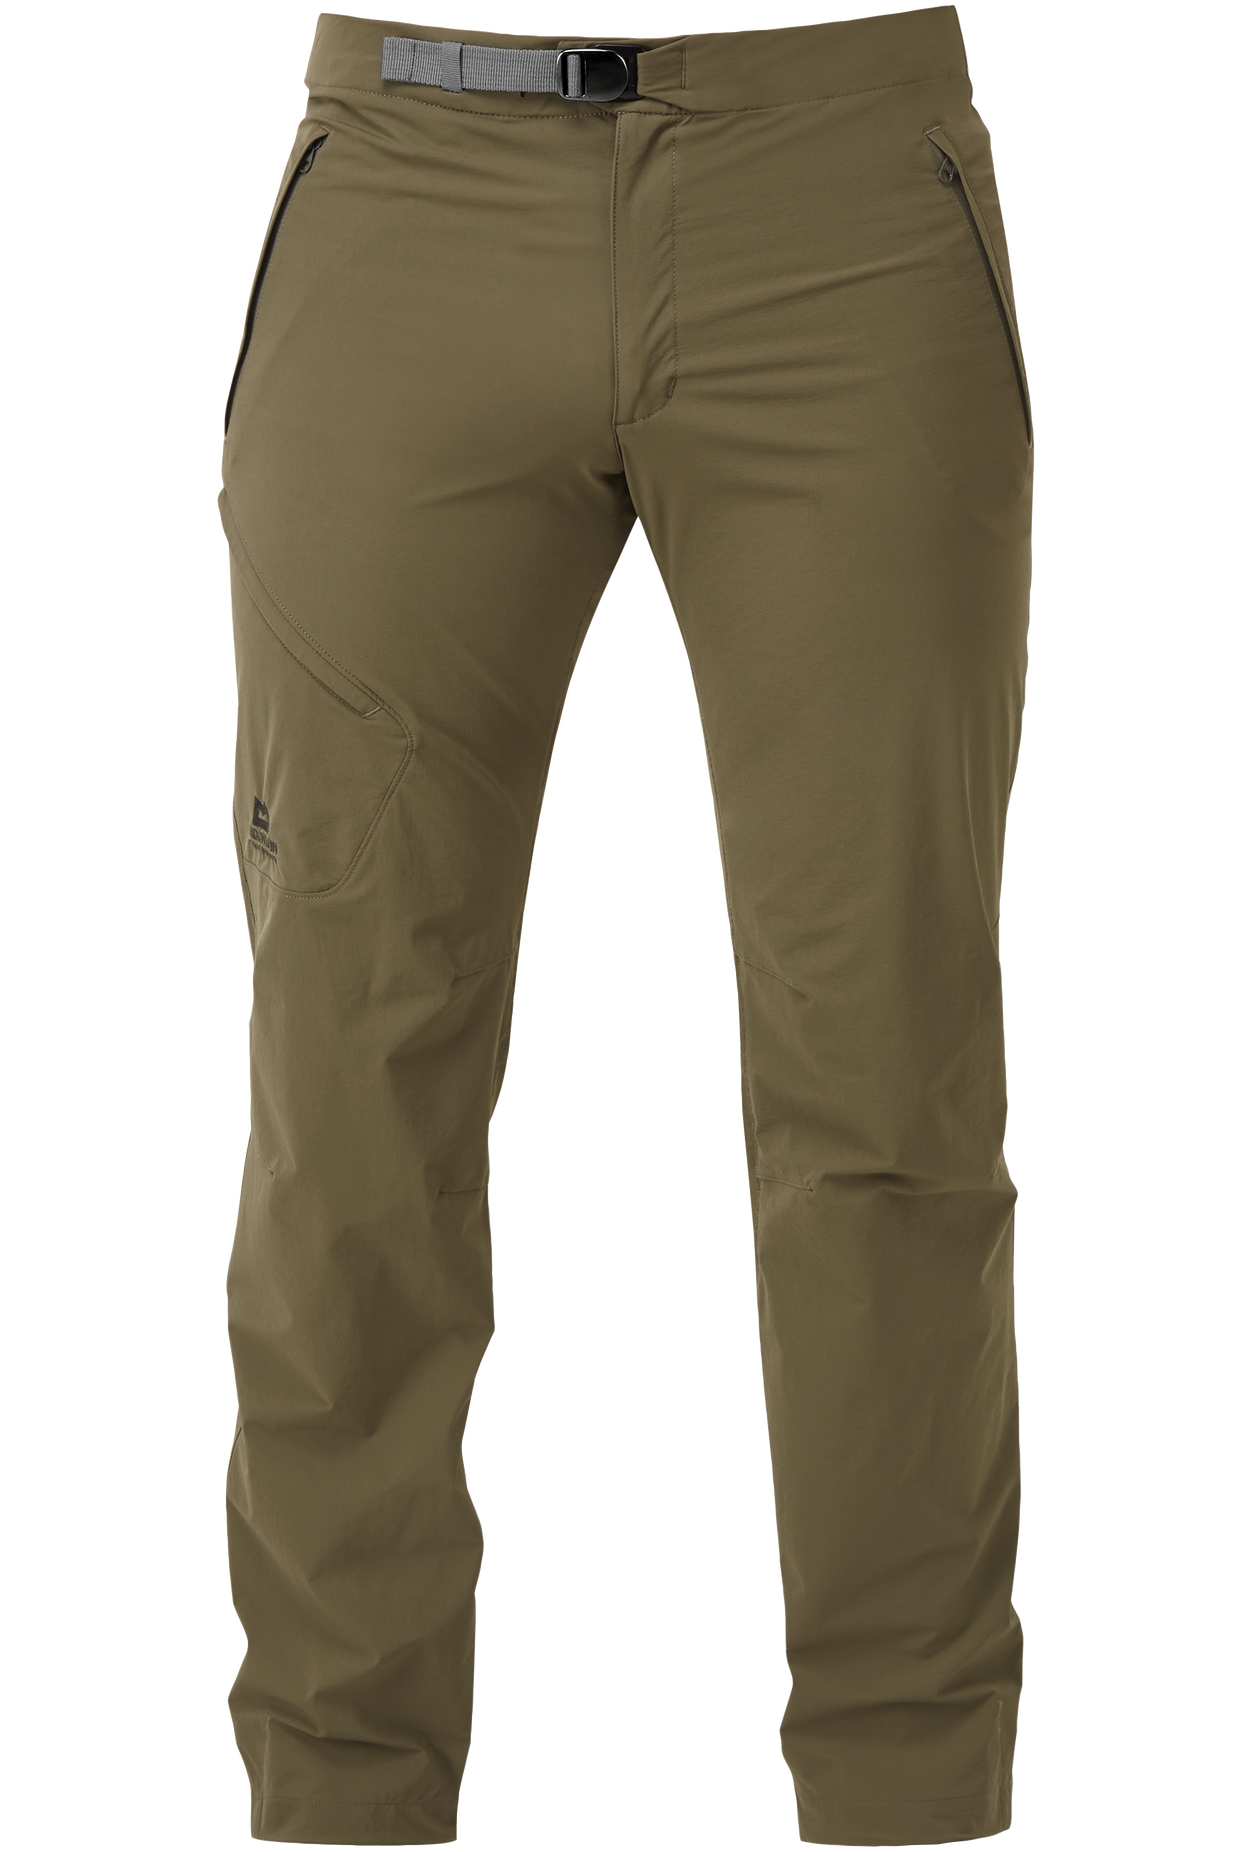 Mountain Equipment pánské softshellové kalhoty Comici Pant - prodloužené Barva: Mudstone, Velikost: 38/XXL